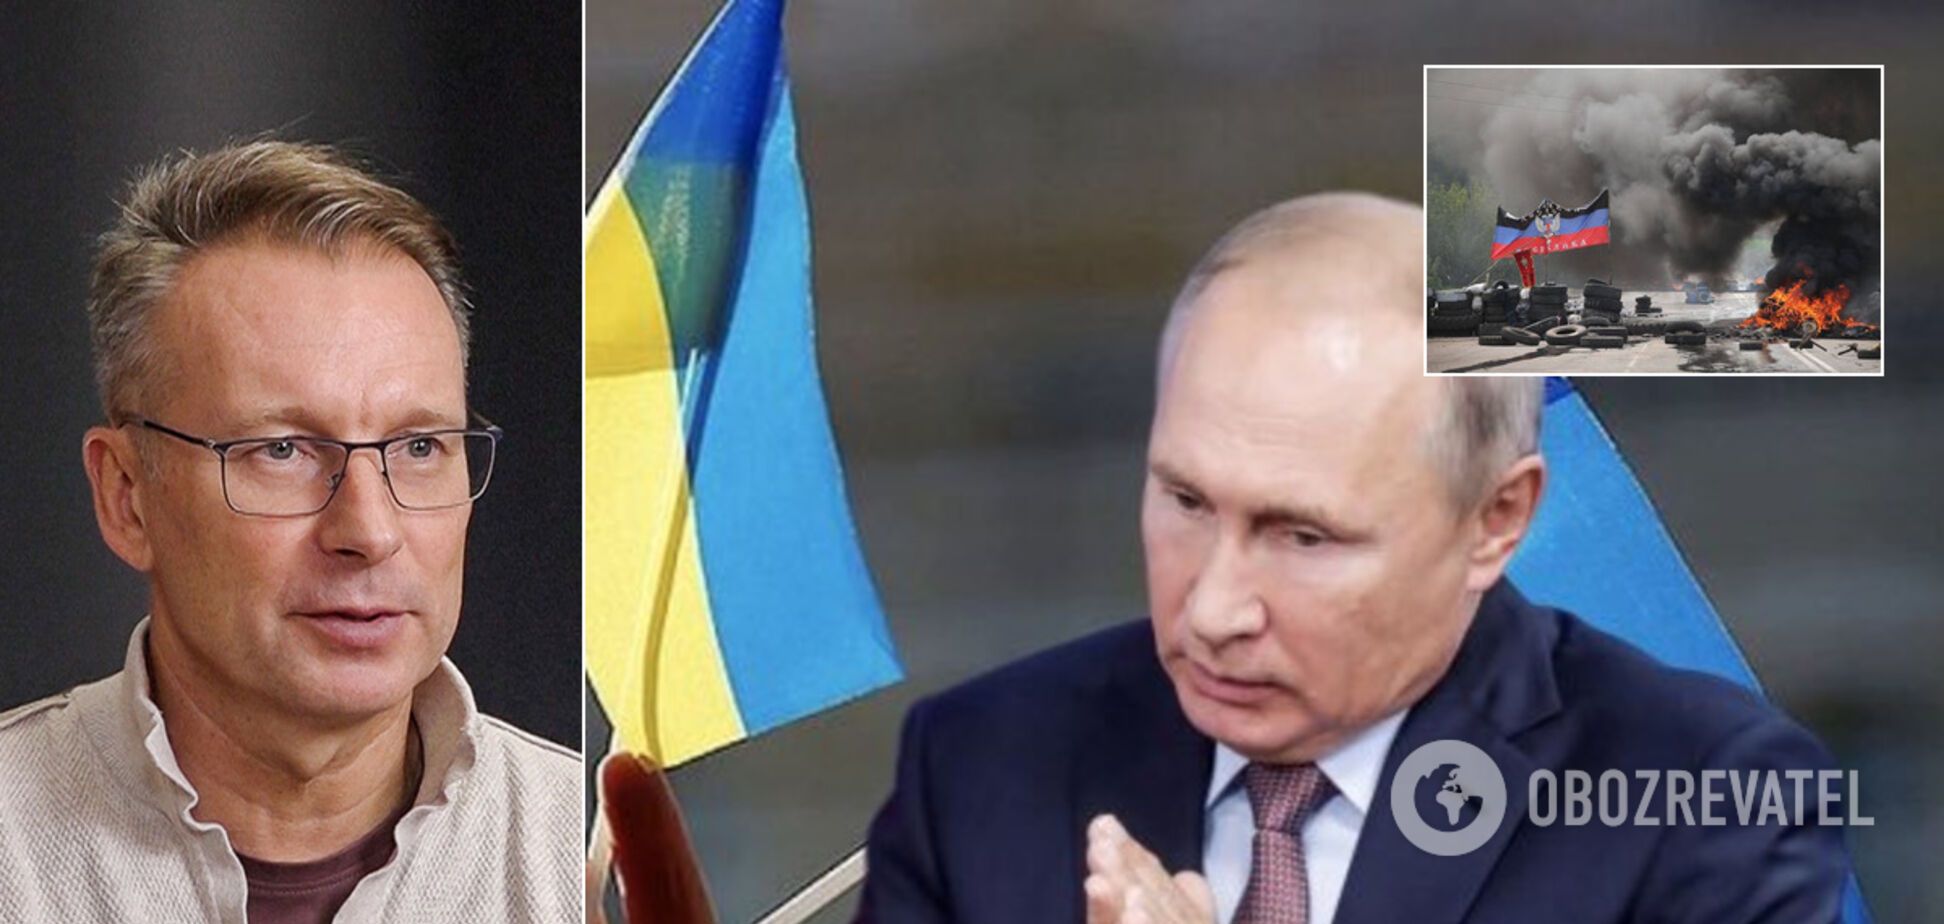 Путин хотел захватить 9 областей Украины: дипломат сказал зачем